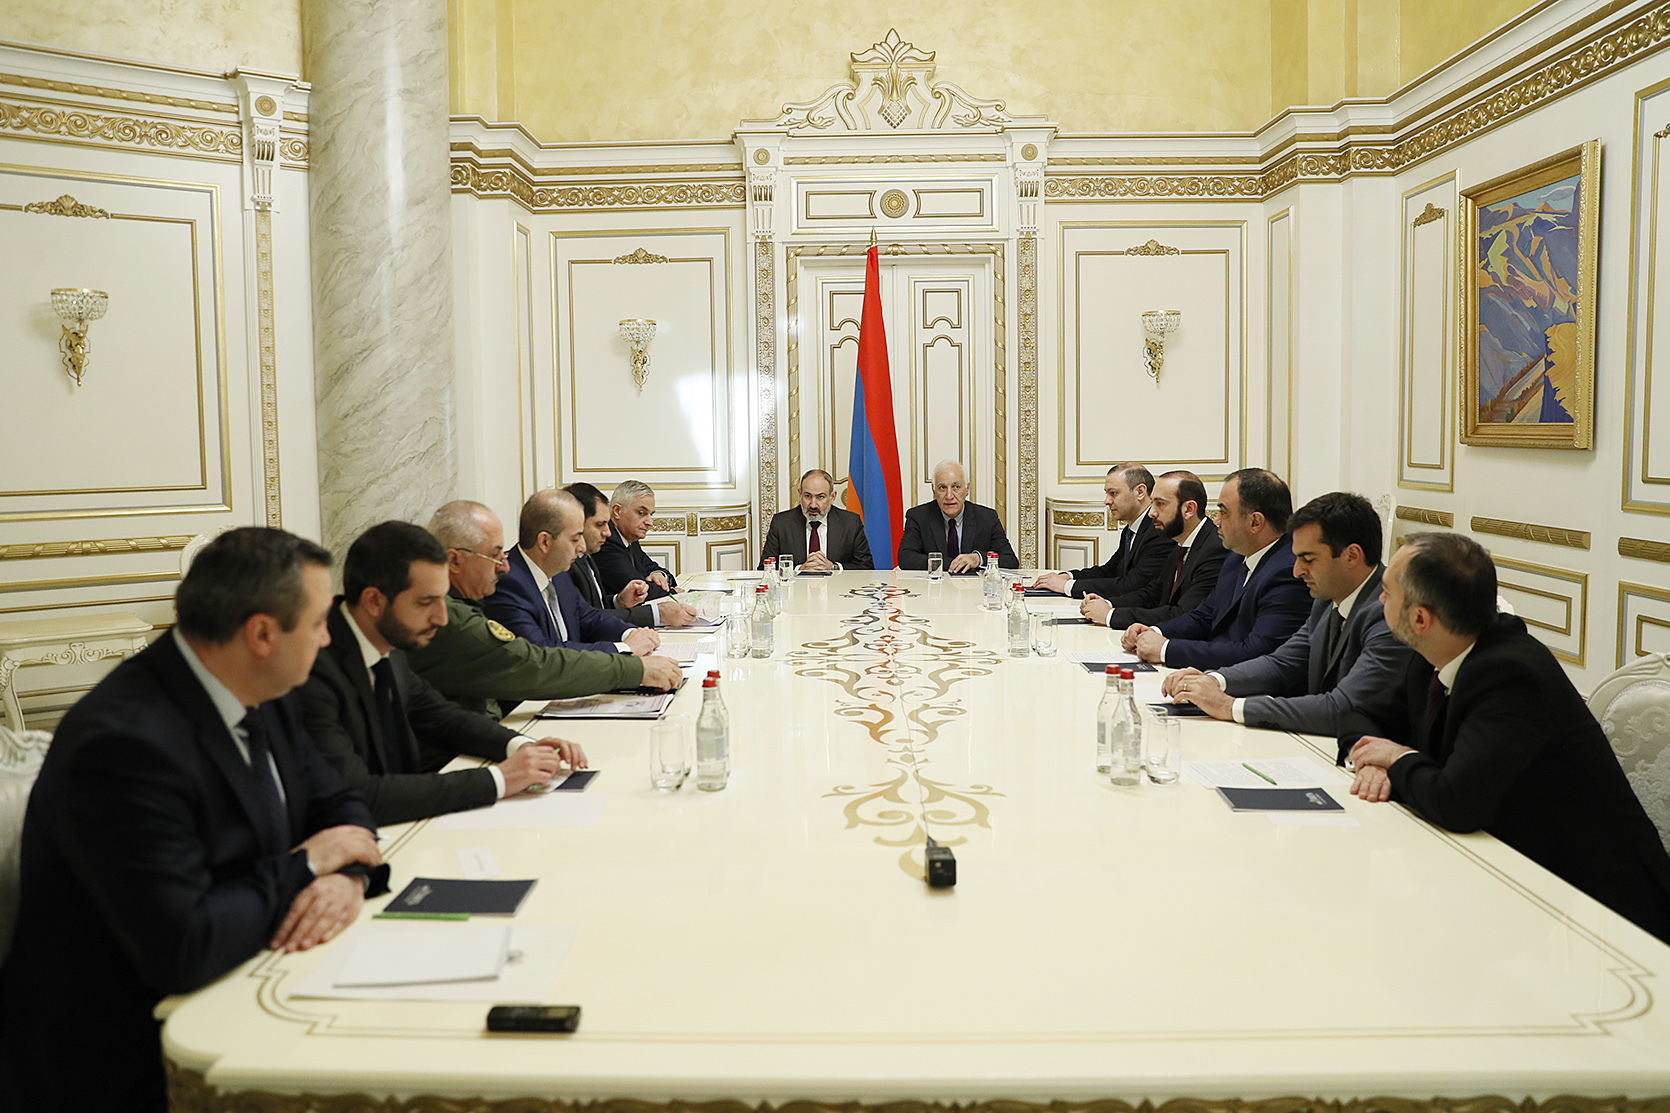 ՀՀ Անվտանգության խորհուրդն Ադրբեջանին առաջարկում է անհապաղ բանակցություններ սկսել խաղաղության պայմանագրի շուրջ